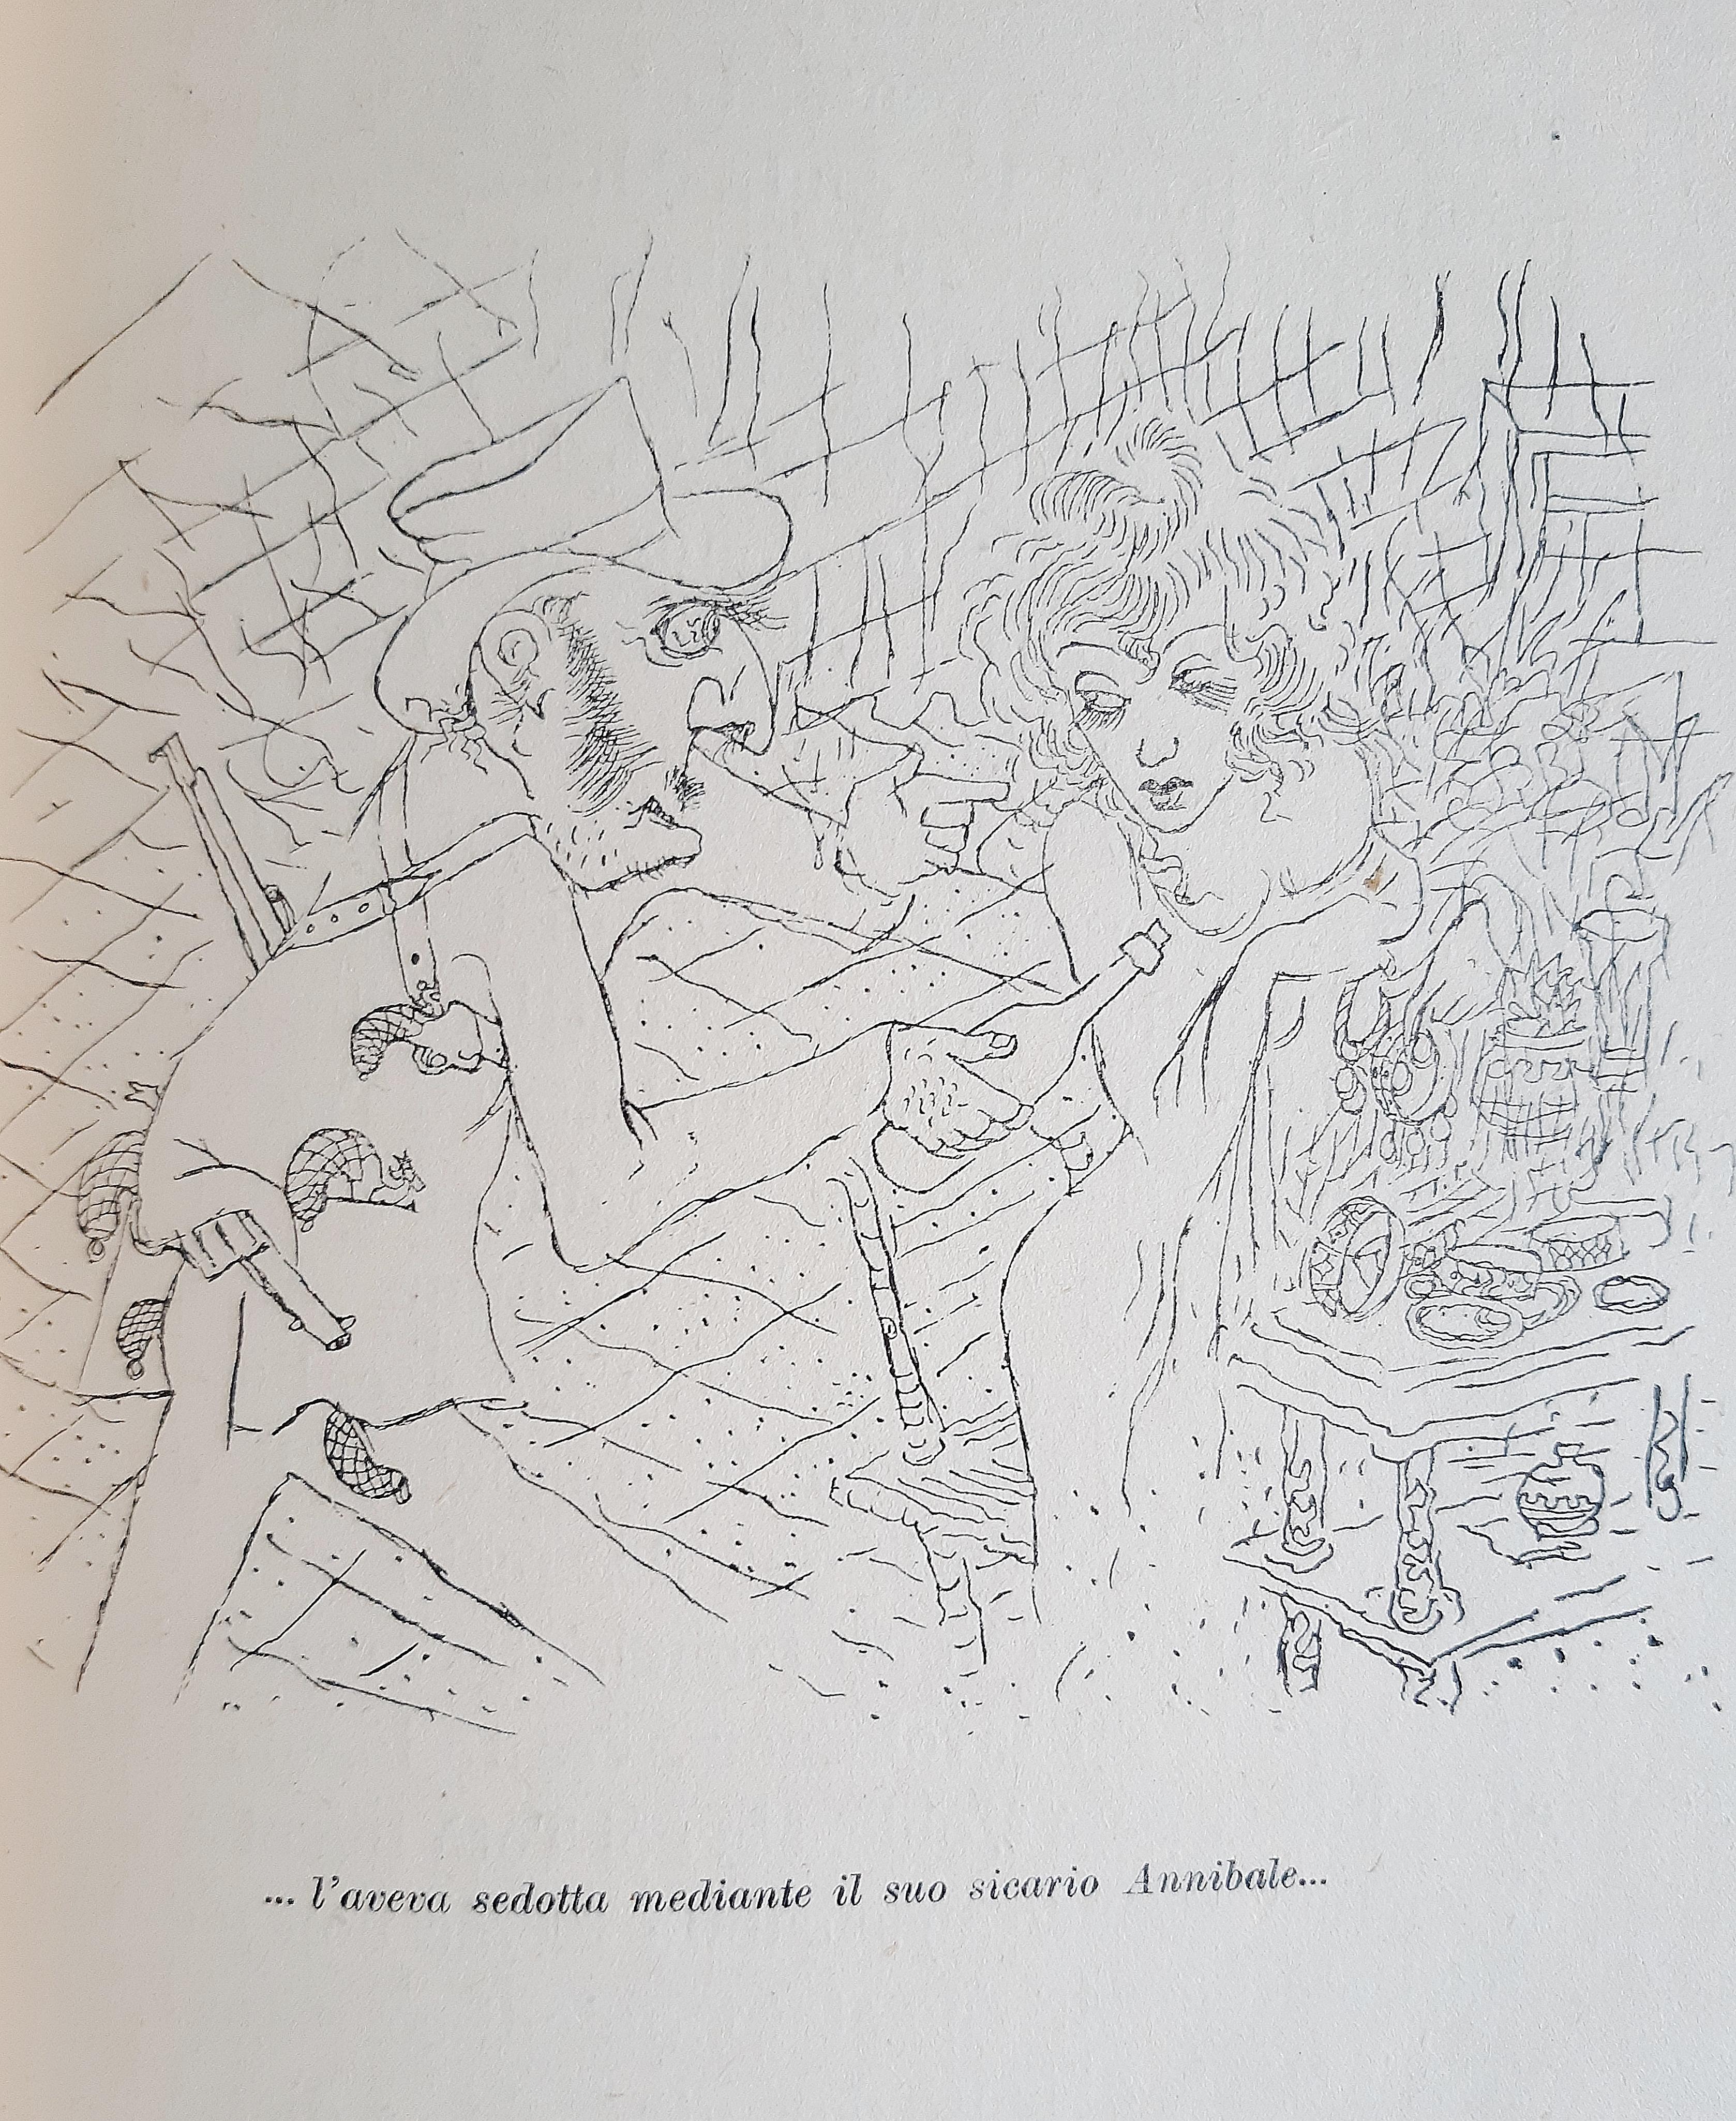 Totò il buono - Rare Book Illustrated by Mino Maccari - 1943 For Sale 3